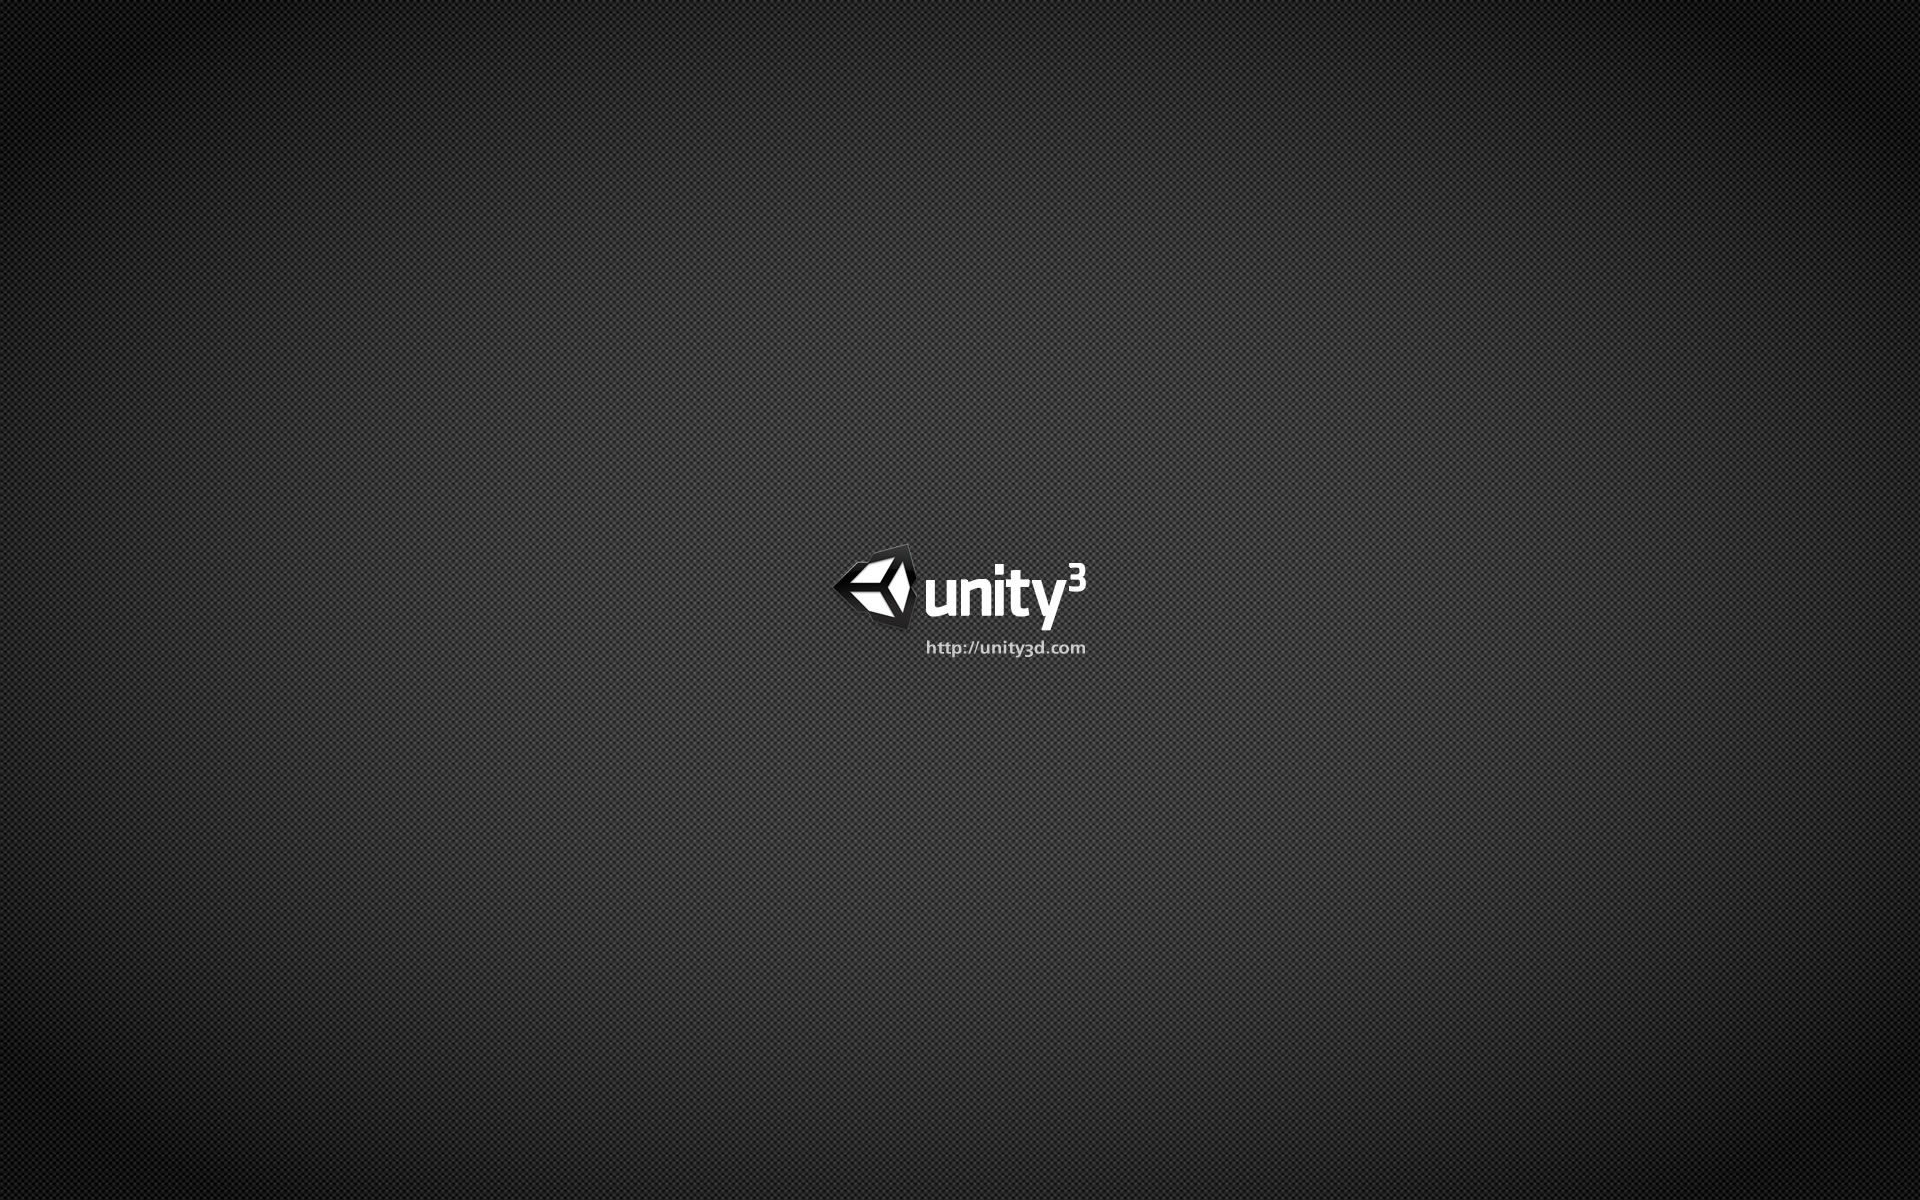 Bạn đang tìm hình nền Unity đẹp mắt cho máy tính? Đừng bỏ qua bộ sưu tập hình nền Unity miễn phí cho máy tính của chúng tôi. Với hàng nghìn hình ảnh độc đáo và tuyệt vời, bạn sẽ chắc chắn tìm được điều mình cần.